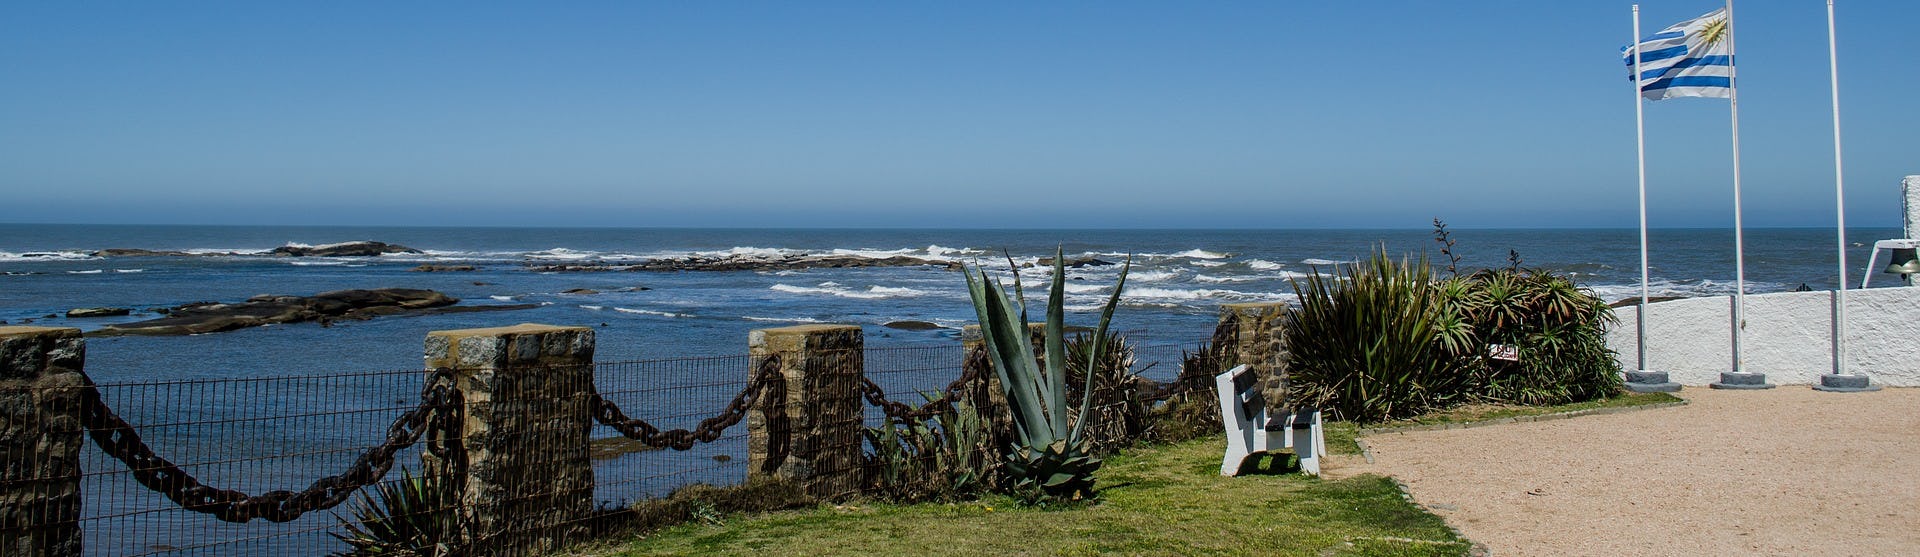 Montevideos kustlinje med havet och flaggan för Uruguay som vajar till höger.